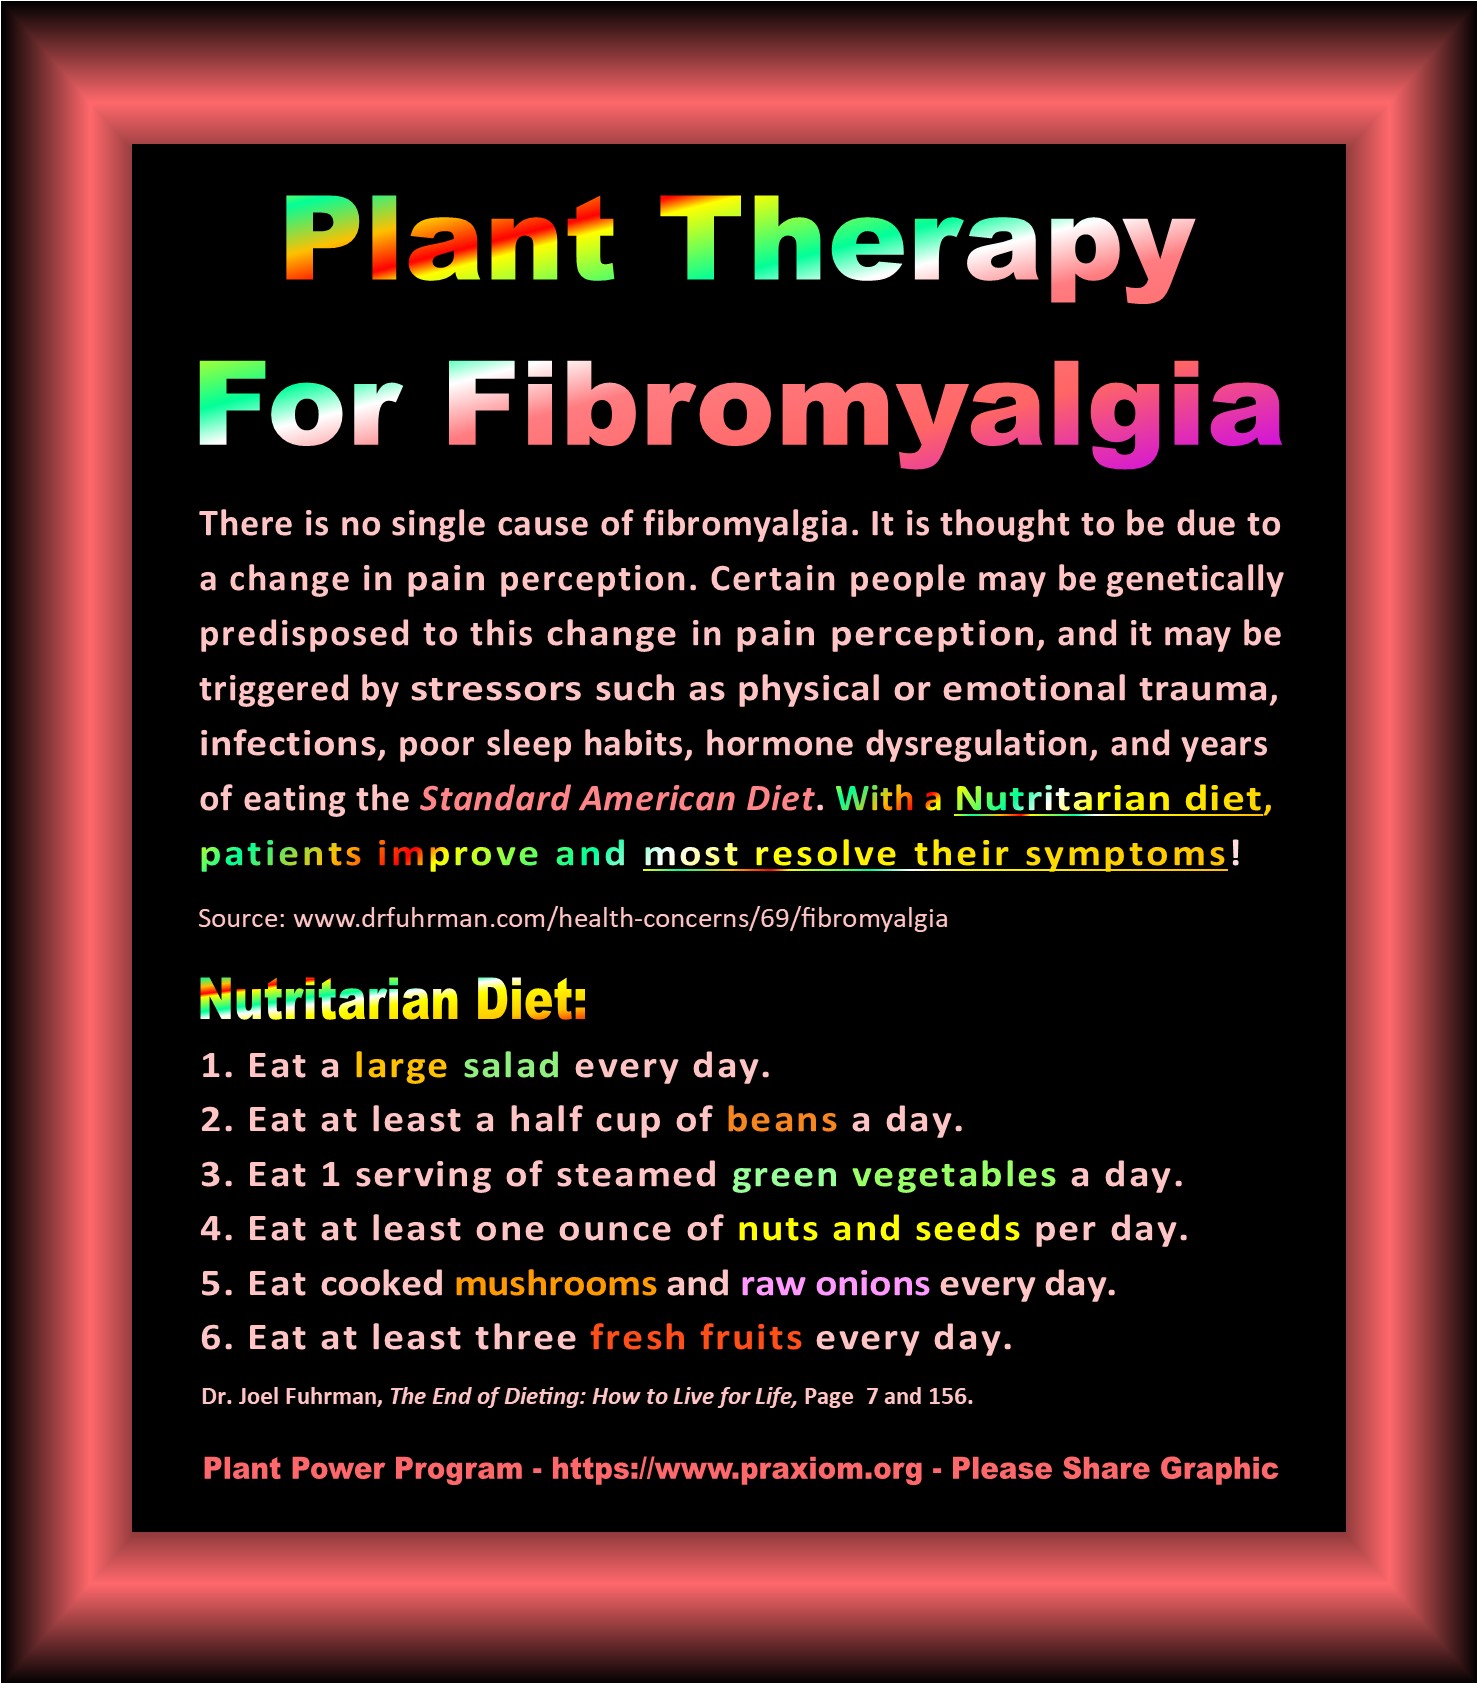 Plant Therapy for Fibromyalgia